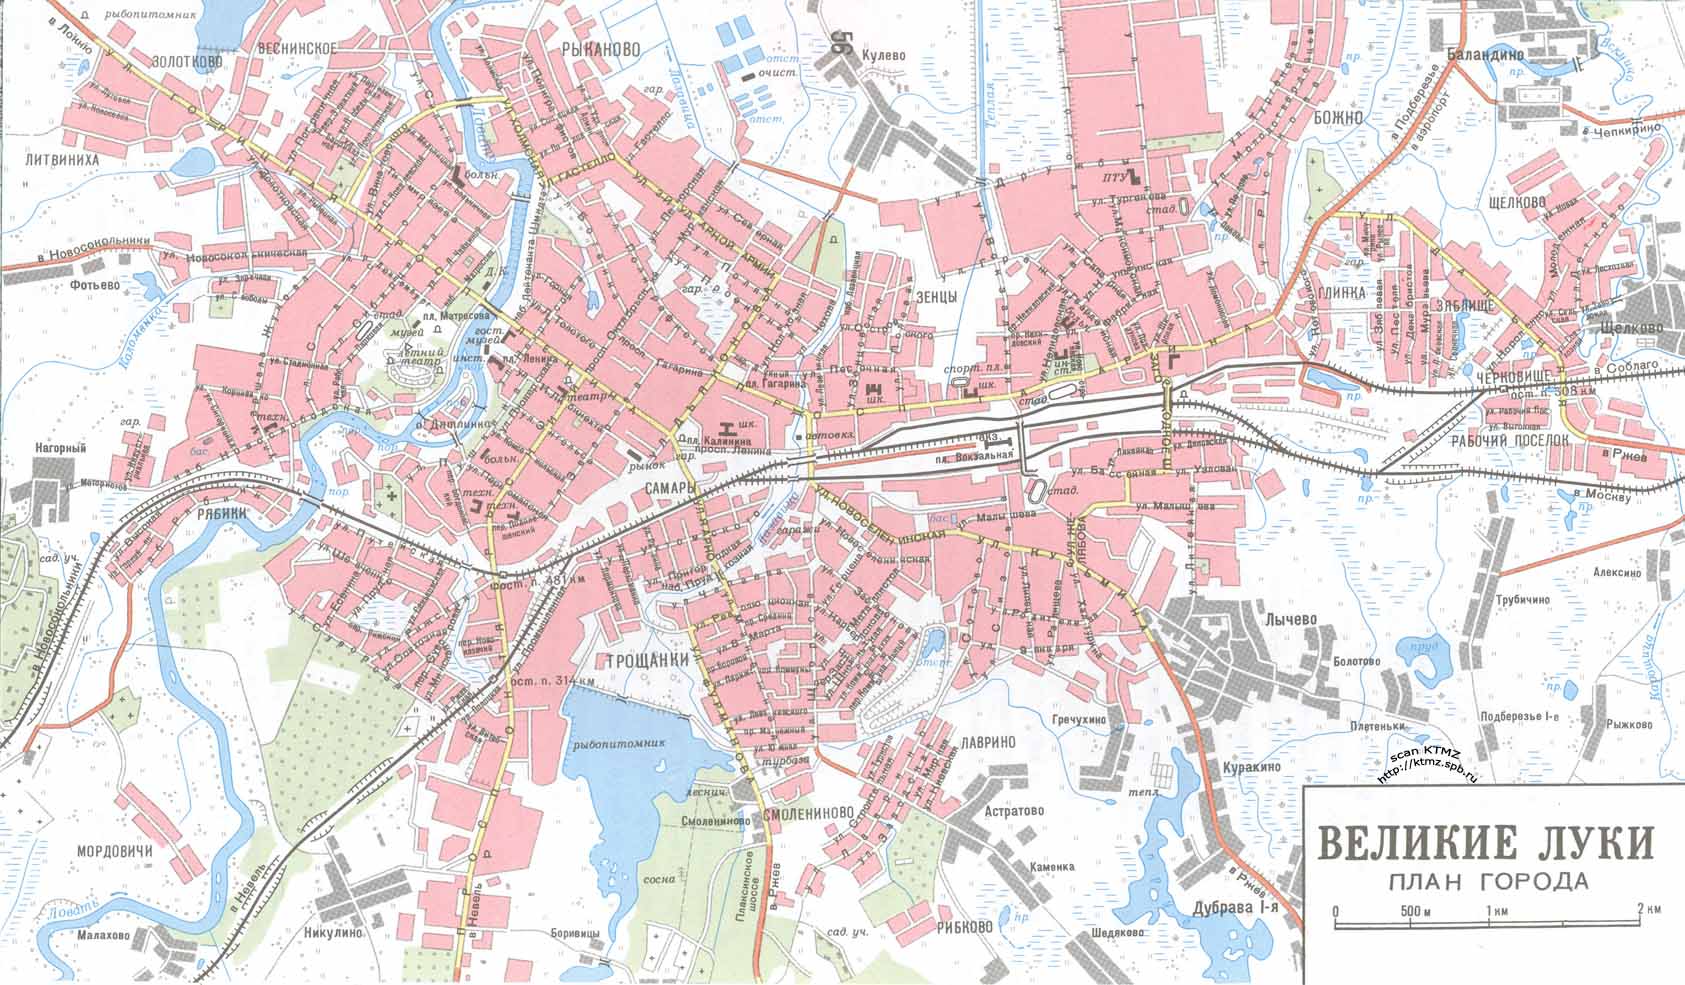 Топографический атлас Псковской области - Карта города Великие Луки